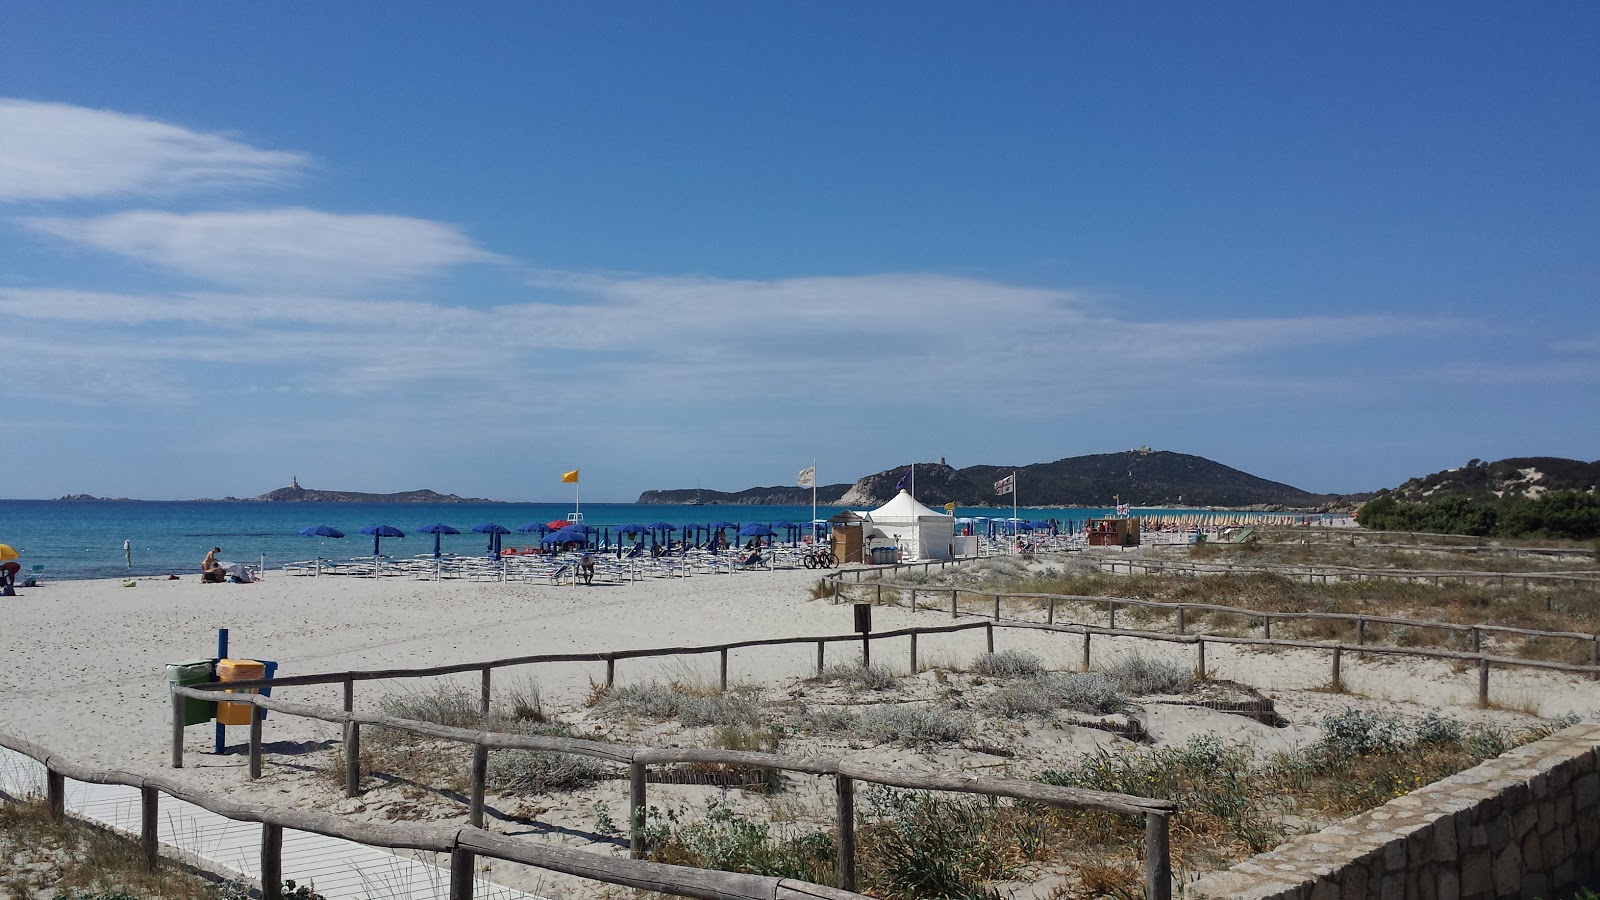 Foto de Spiaggia di Simius - lugar popular entre los conocedores del relax